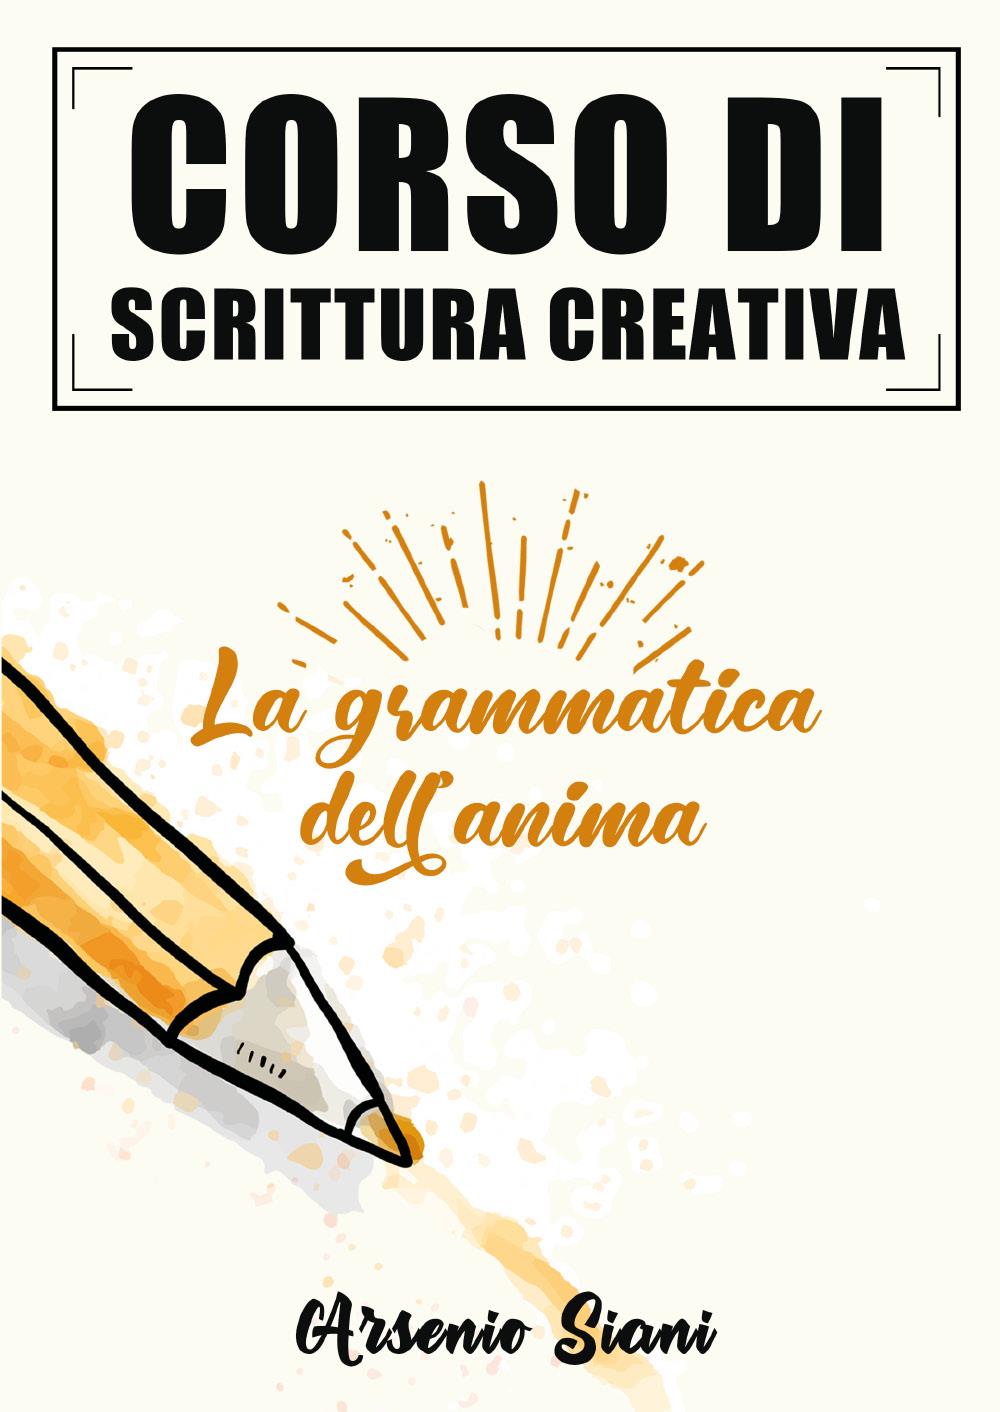 Corso di scrittura creativa: la grammatica dell'anima